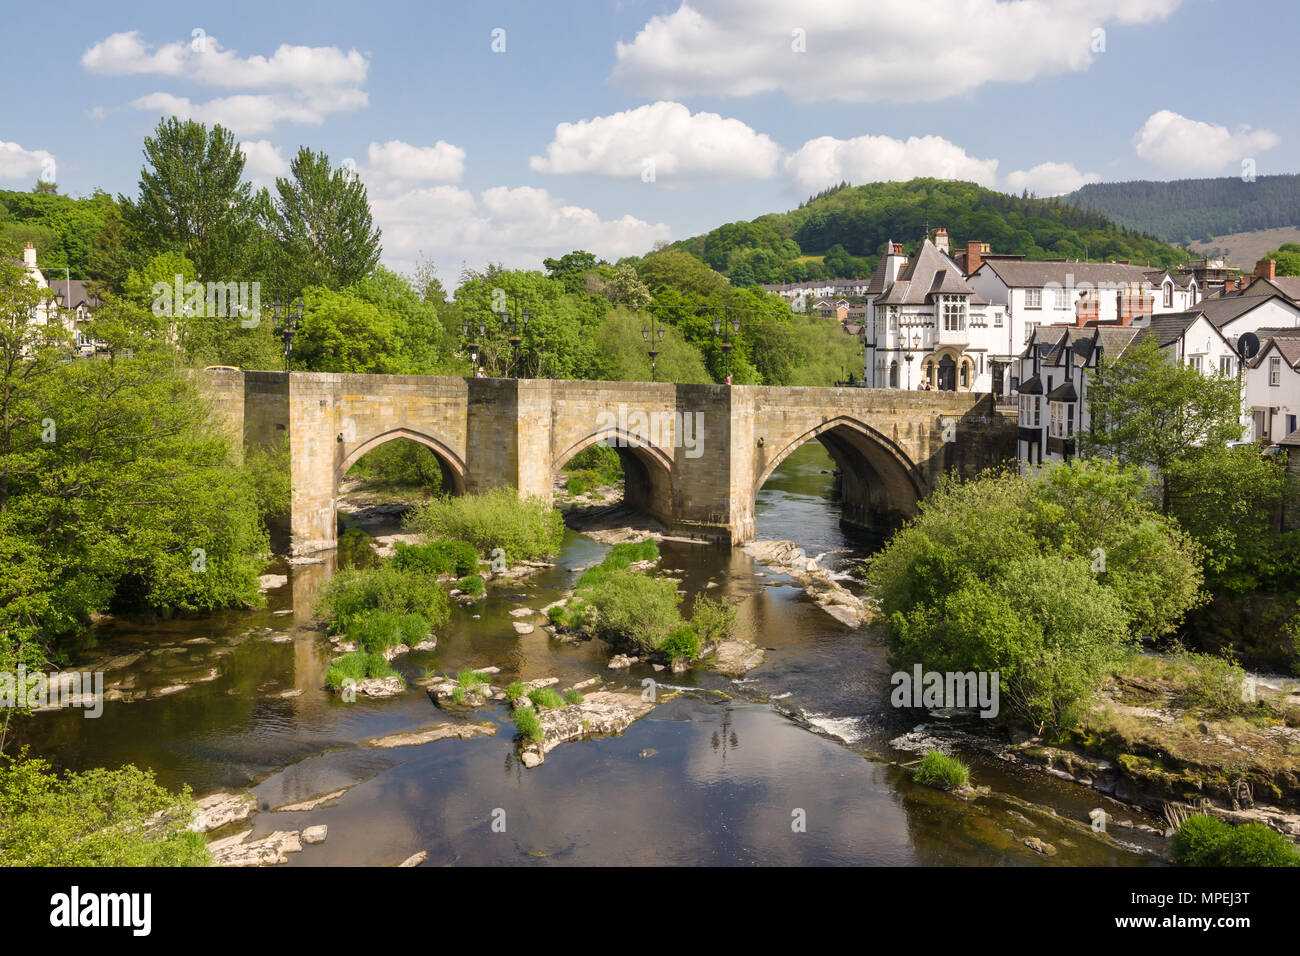 Le pont de Llangollen l'une des sept merveilles du pays de Galles construit au 16ème siècle c'est le principal point de passage sur la rivière Dee ou d'Afon Dyfrdwy Banque D'Images